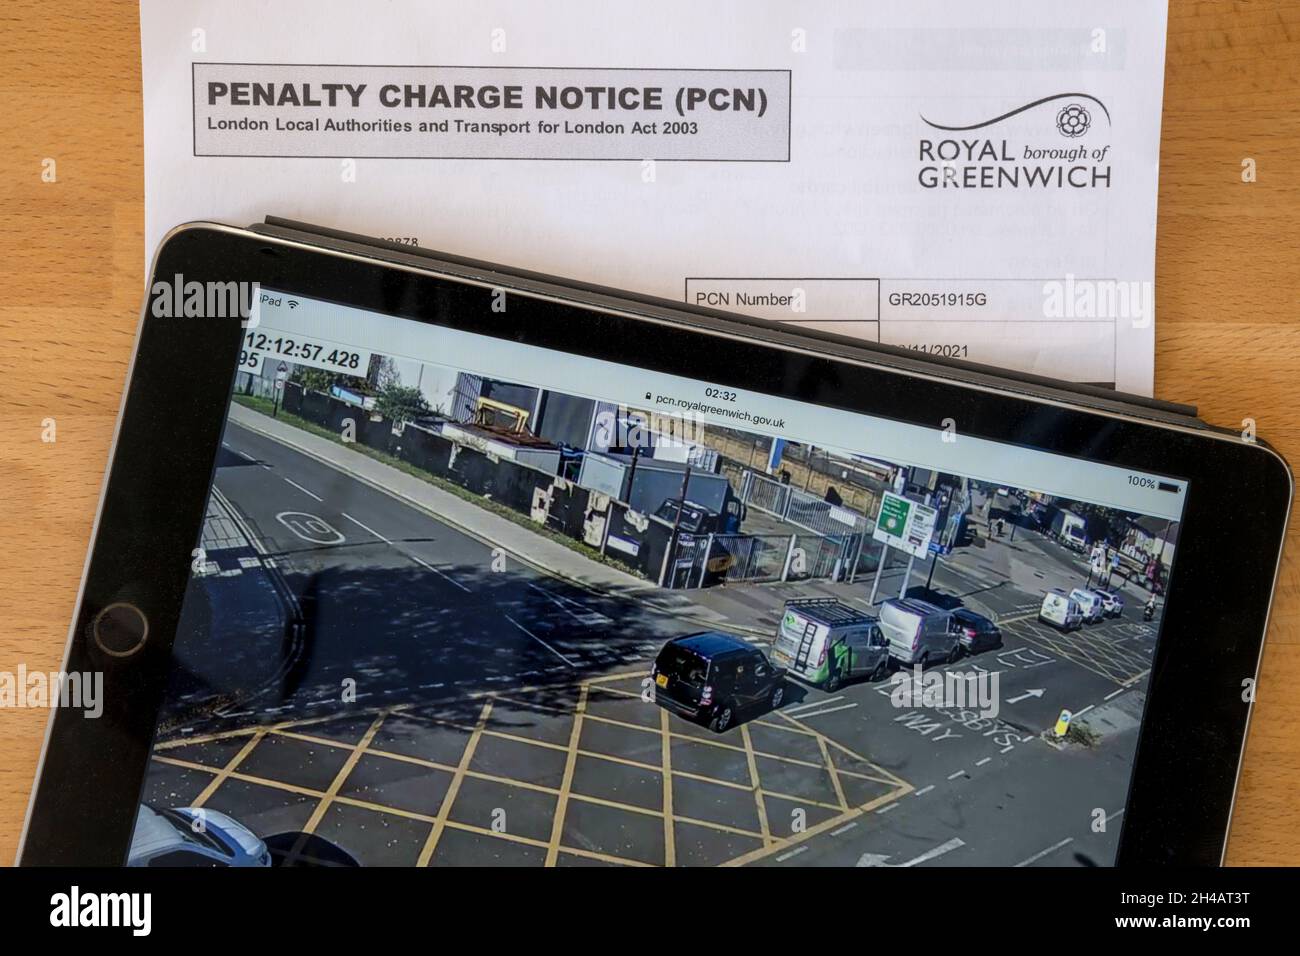 Aviso de penalidad por detenerse en un cruce de cajas con pruebas de cámaras en el ipad. Datos de NB anónimos. Foto de stock